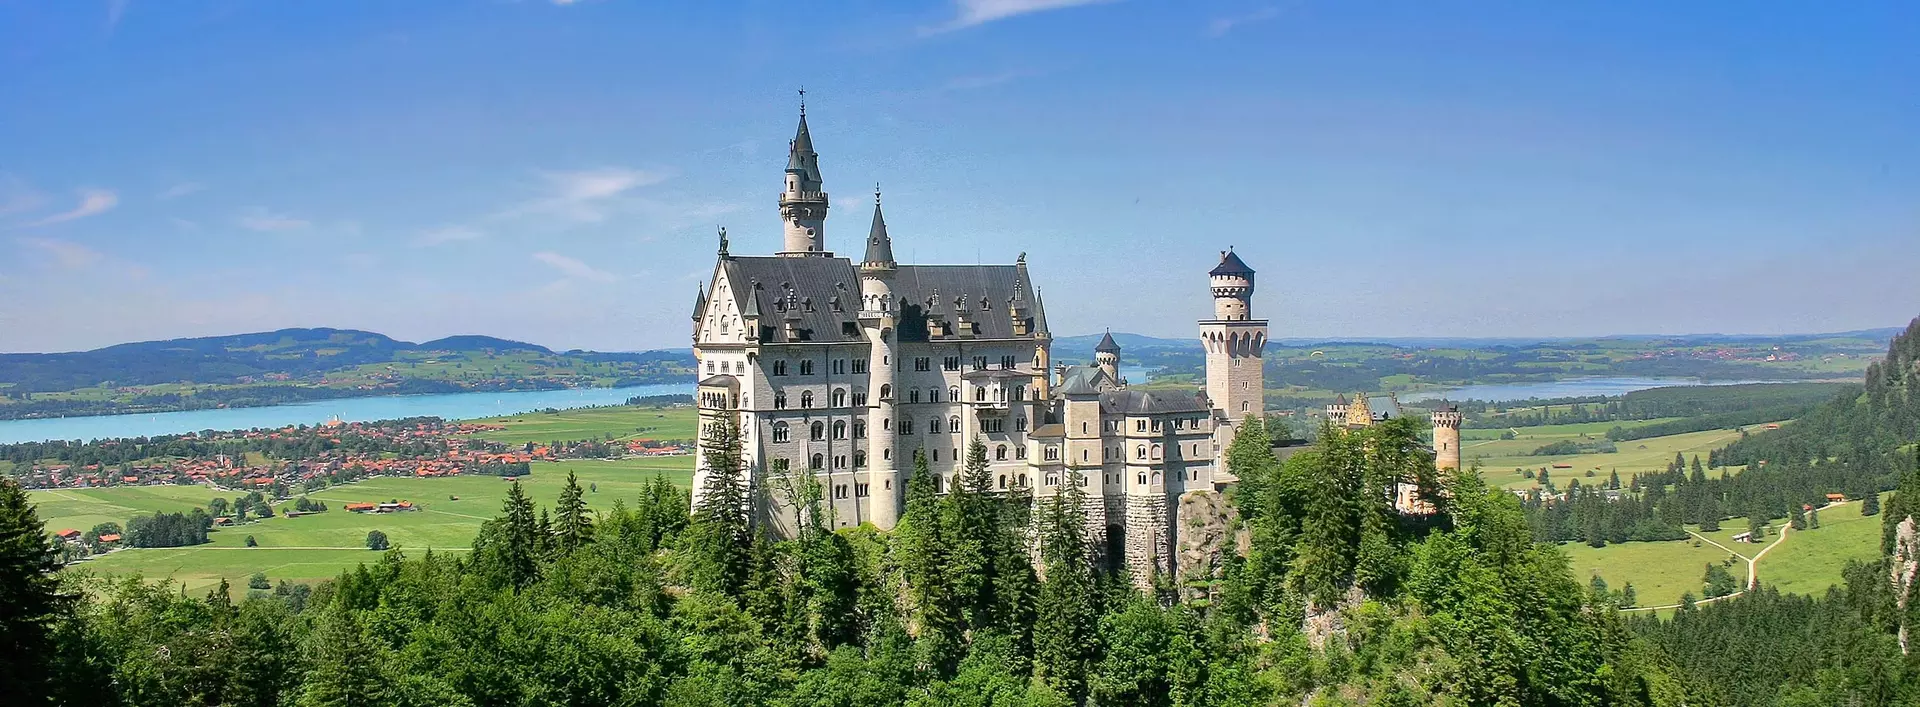 im Urlaub in Bayern das Schloss Neuschwanstein im Allgäu besichtigen